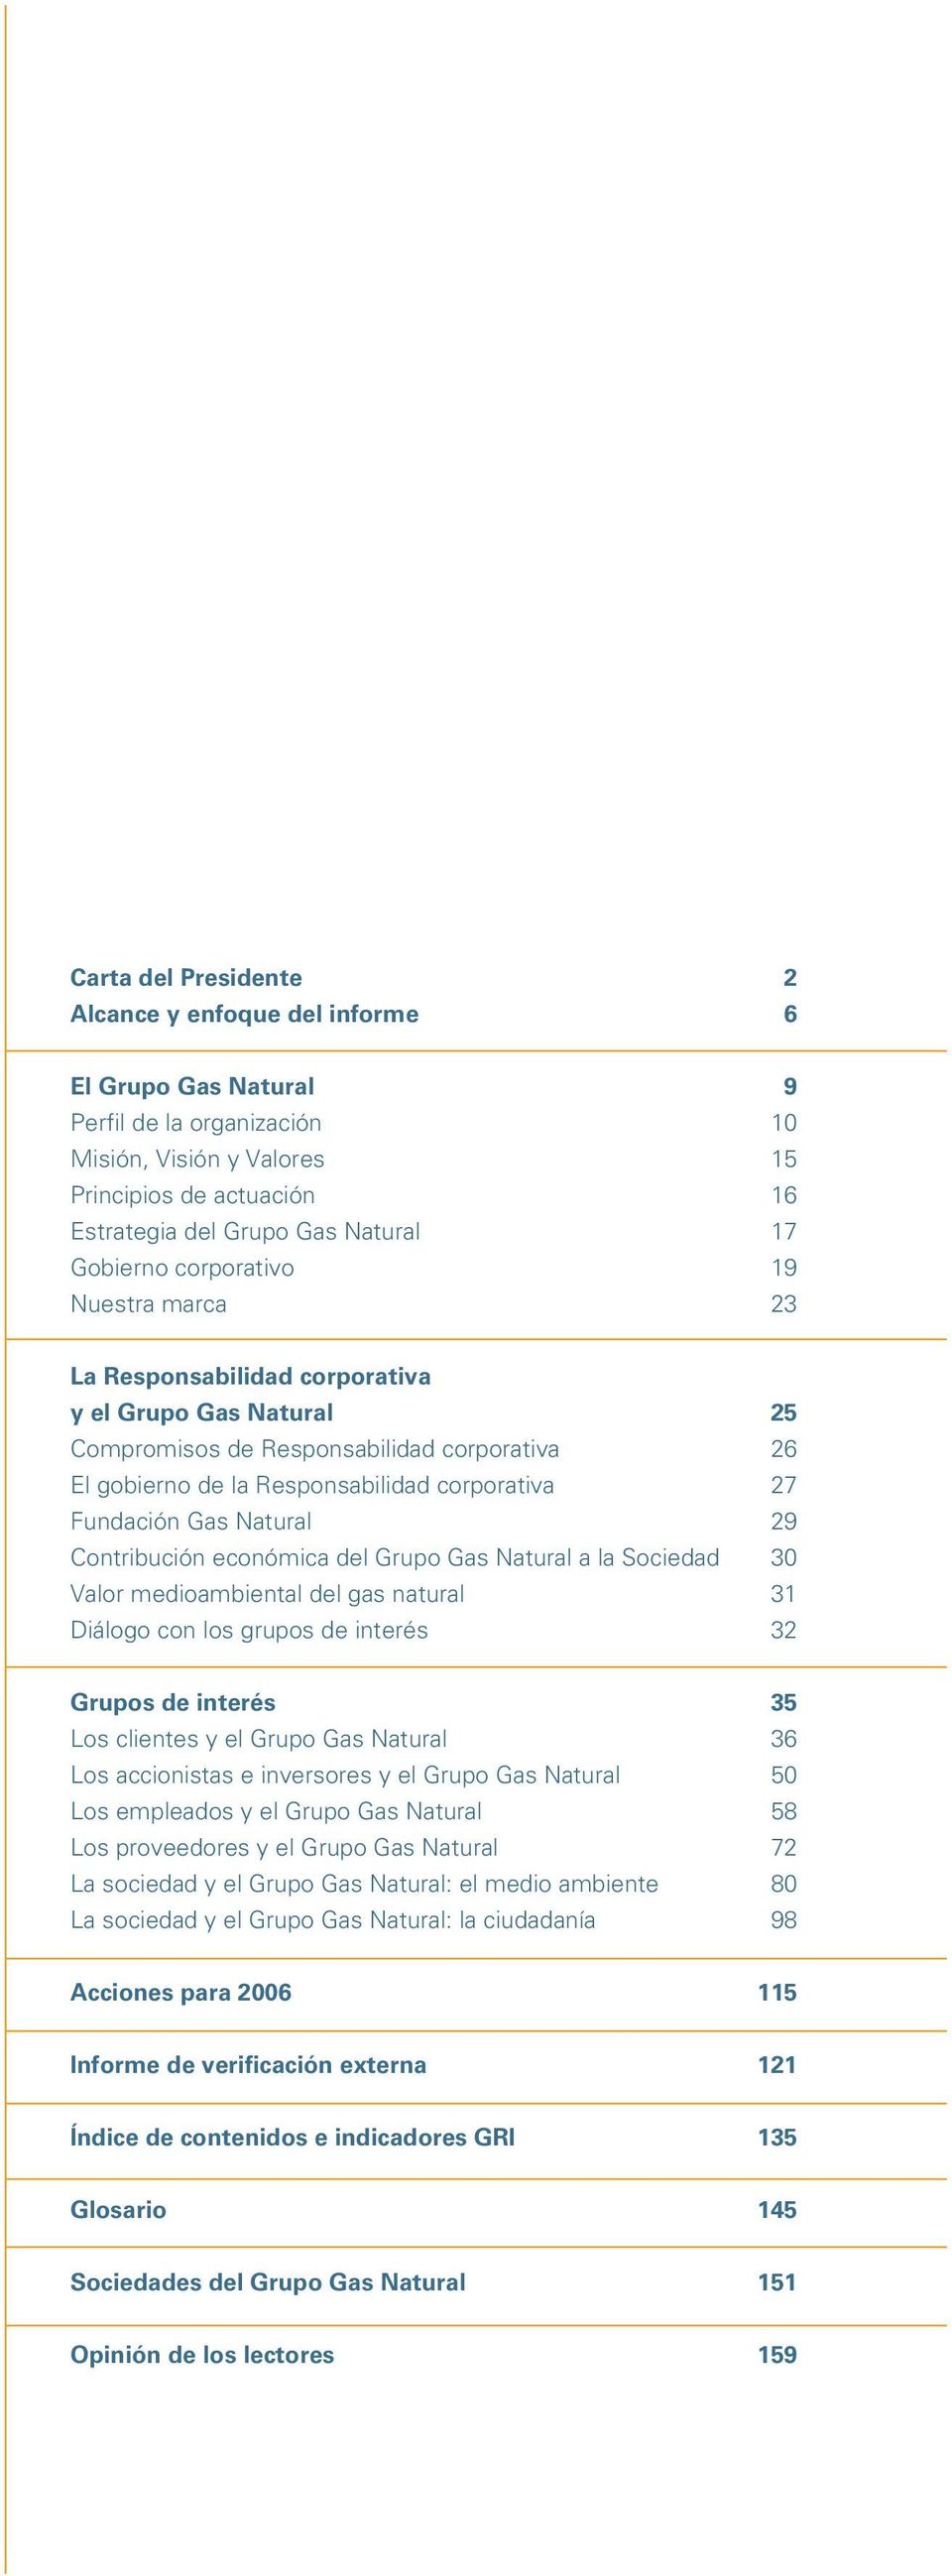 Fundación Gas Natural 29 Contribución económica del Grupo Gas Natural a la Sociedad 30 Valor medioambiental del gas natural 31 Diálogo con los grupos de interés 32 Grupos de interés 35 Los clientes y